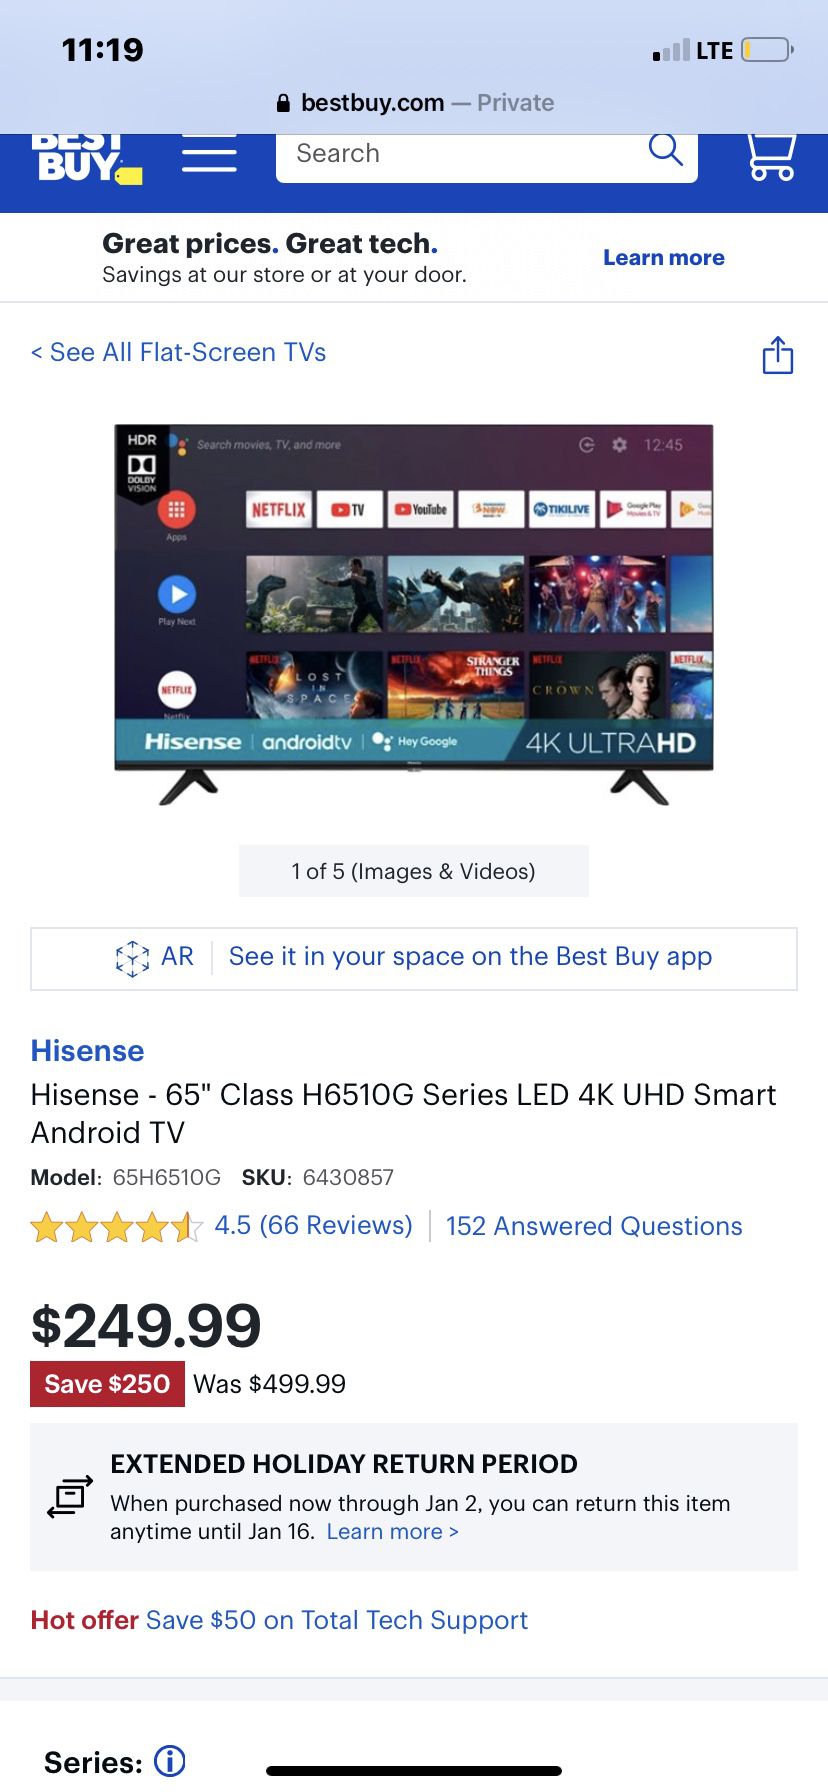 65” 6510G HiSense 4K LED UHD 4k Android Smart TV Brand new DEAL